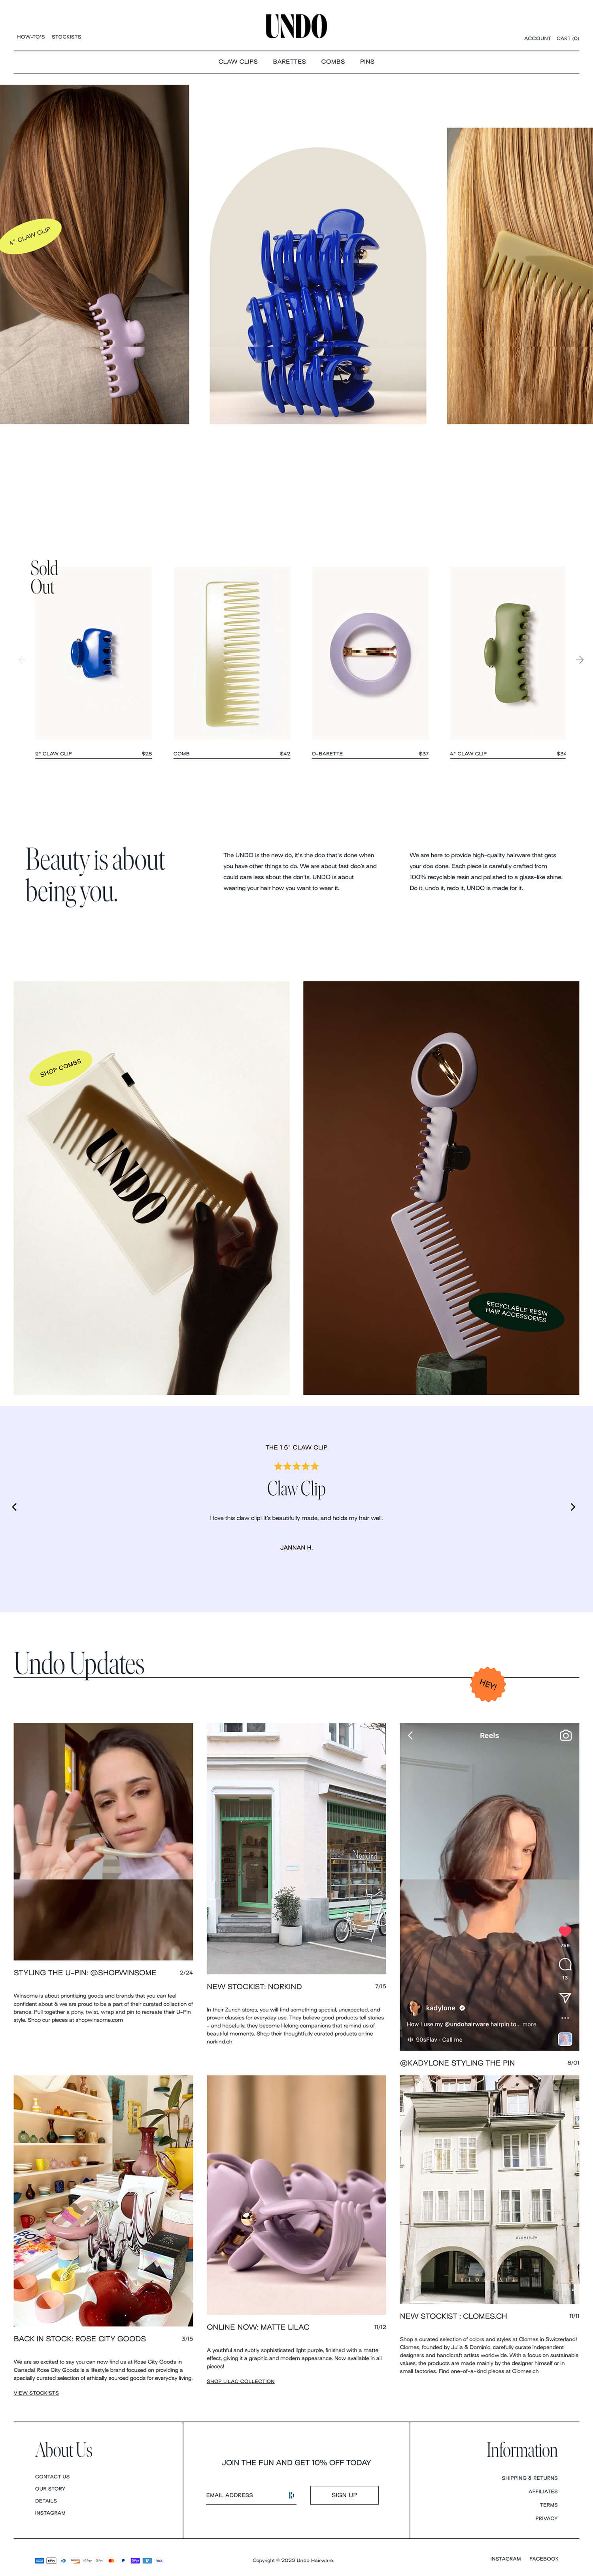 Shopify Website Design Inspiration - Undo